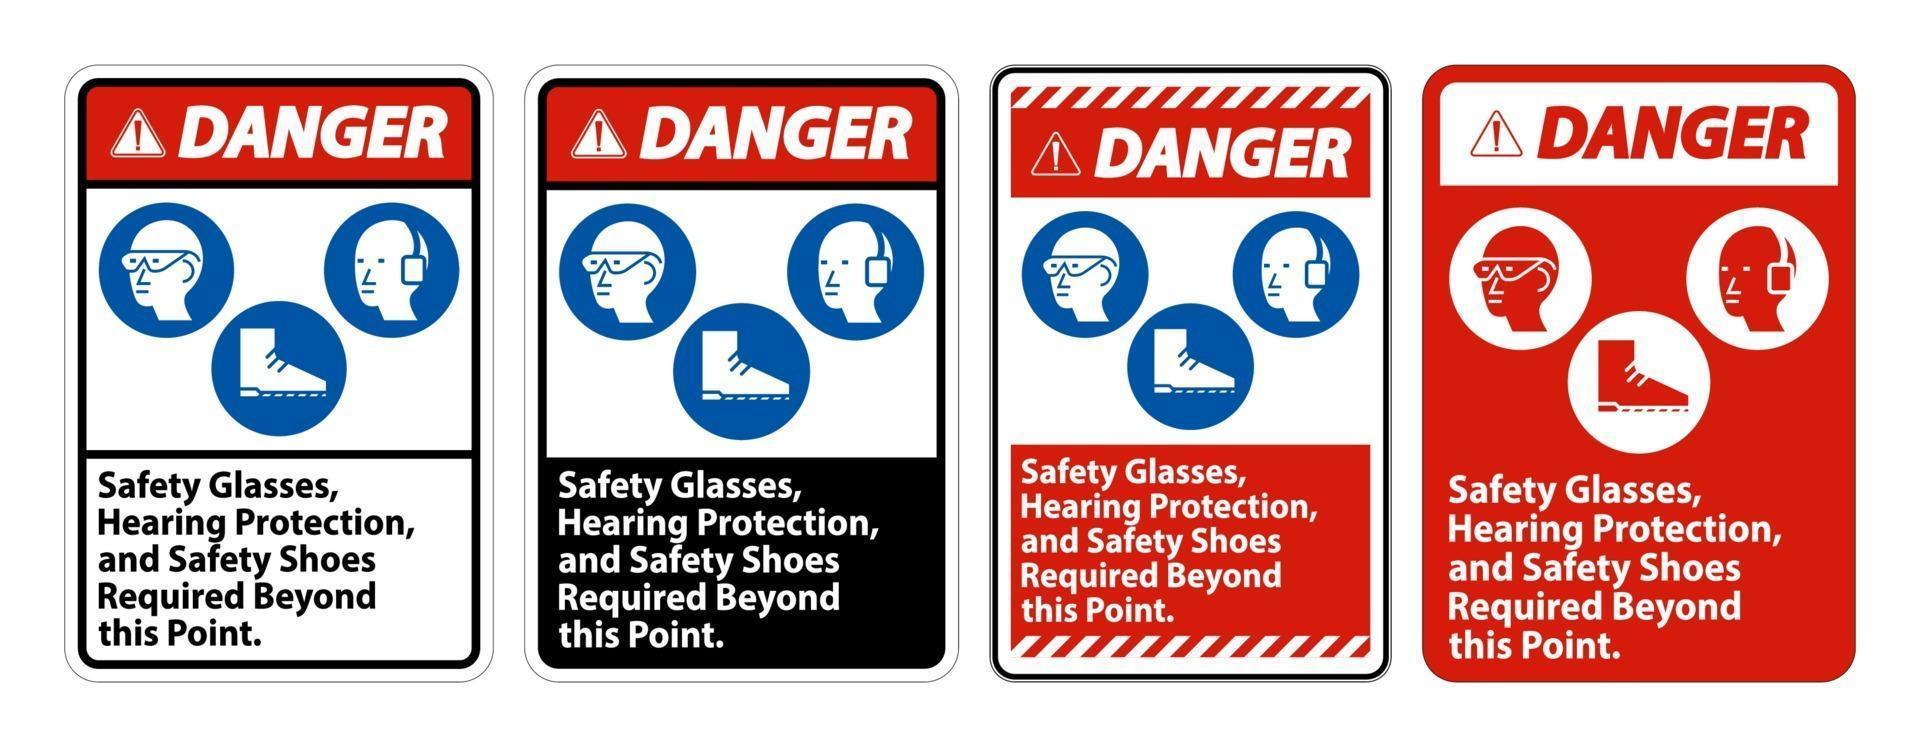 Panneau de danger lunettes de sécurité protection auditive et chaussures de sécurité nécessaires au-delà de ce point sur fond blanc vecteur